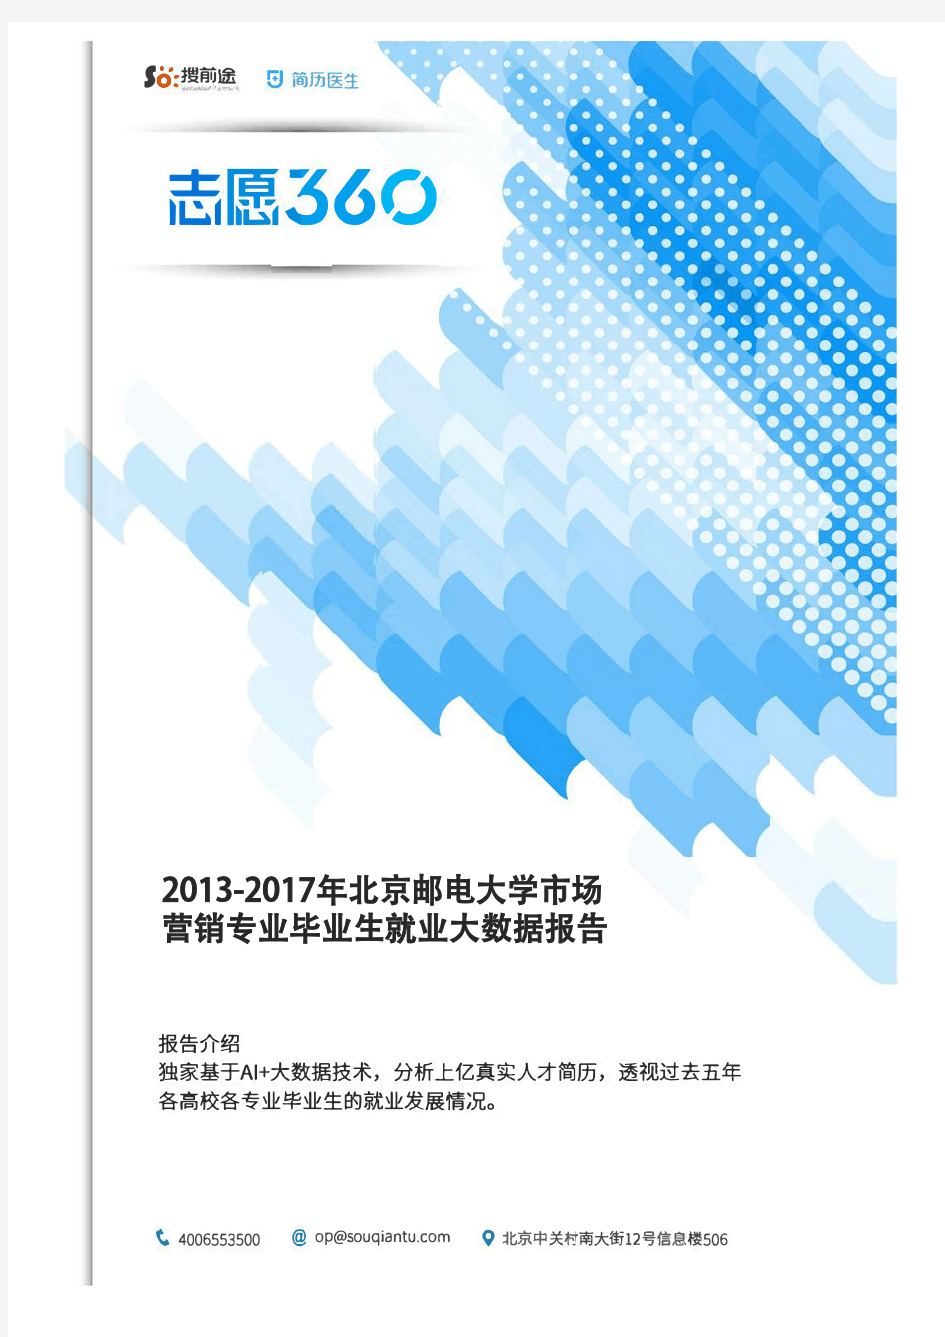 2013-2017年北京邮电大学市场营销专业毕业生就业大数据报告